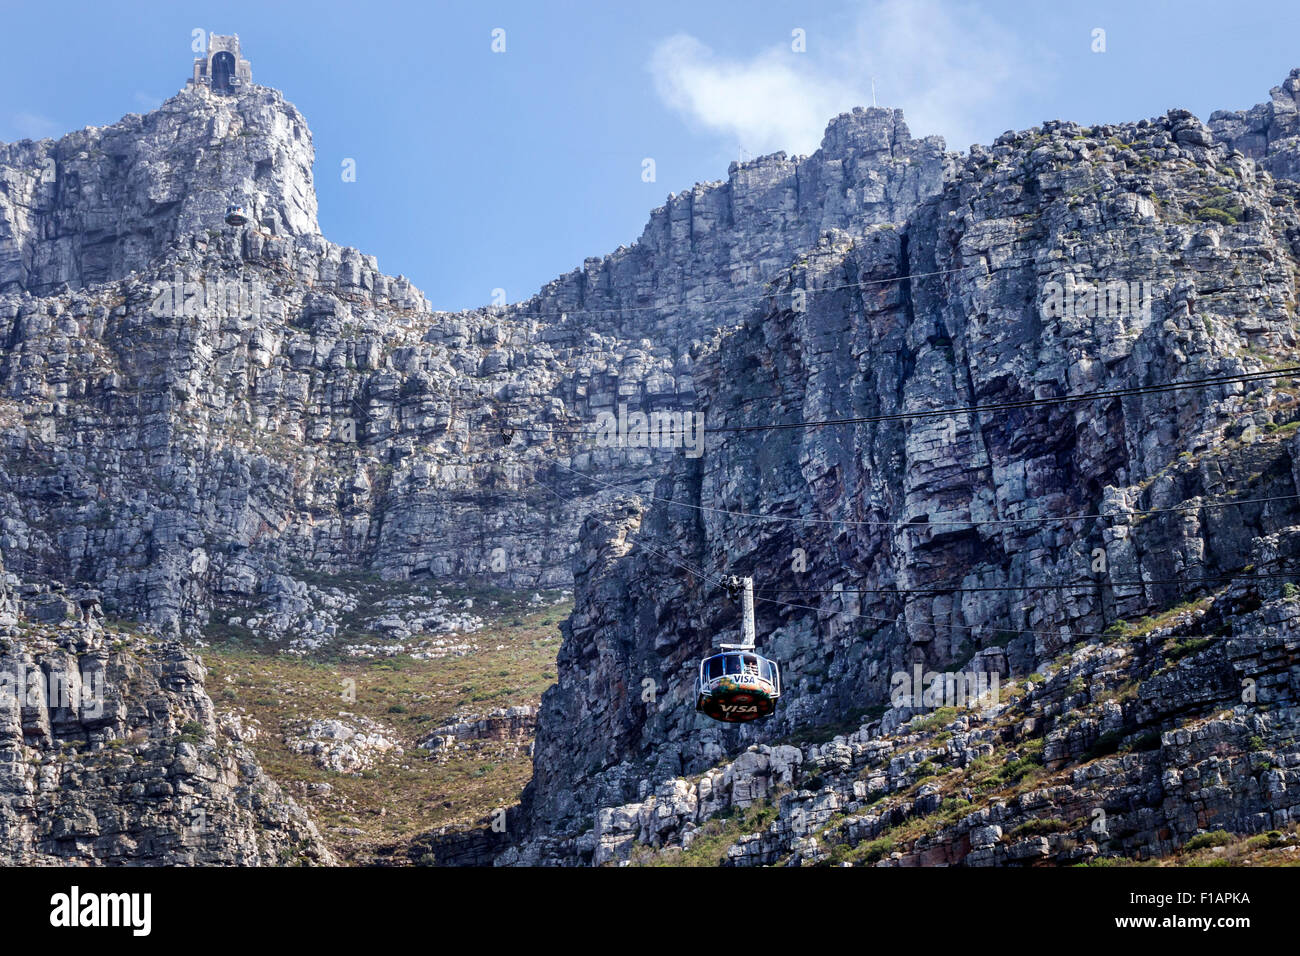 Cape Town Afrique du Sud,Africain,Table Mountain National Park,réserve naturelle,Tafelberg Road,Aerial Cable car cars tramway,approche de la partie inférieure de la sta Banque D'Images